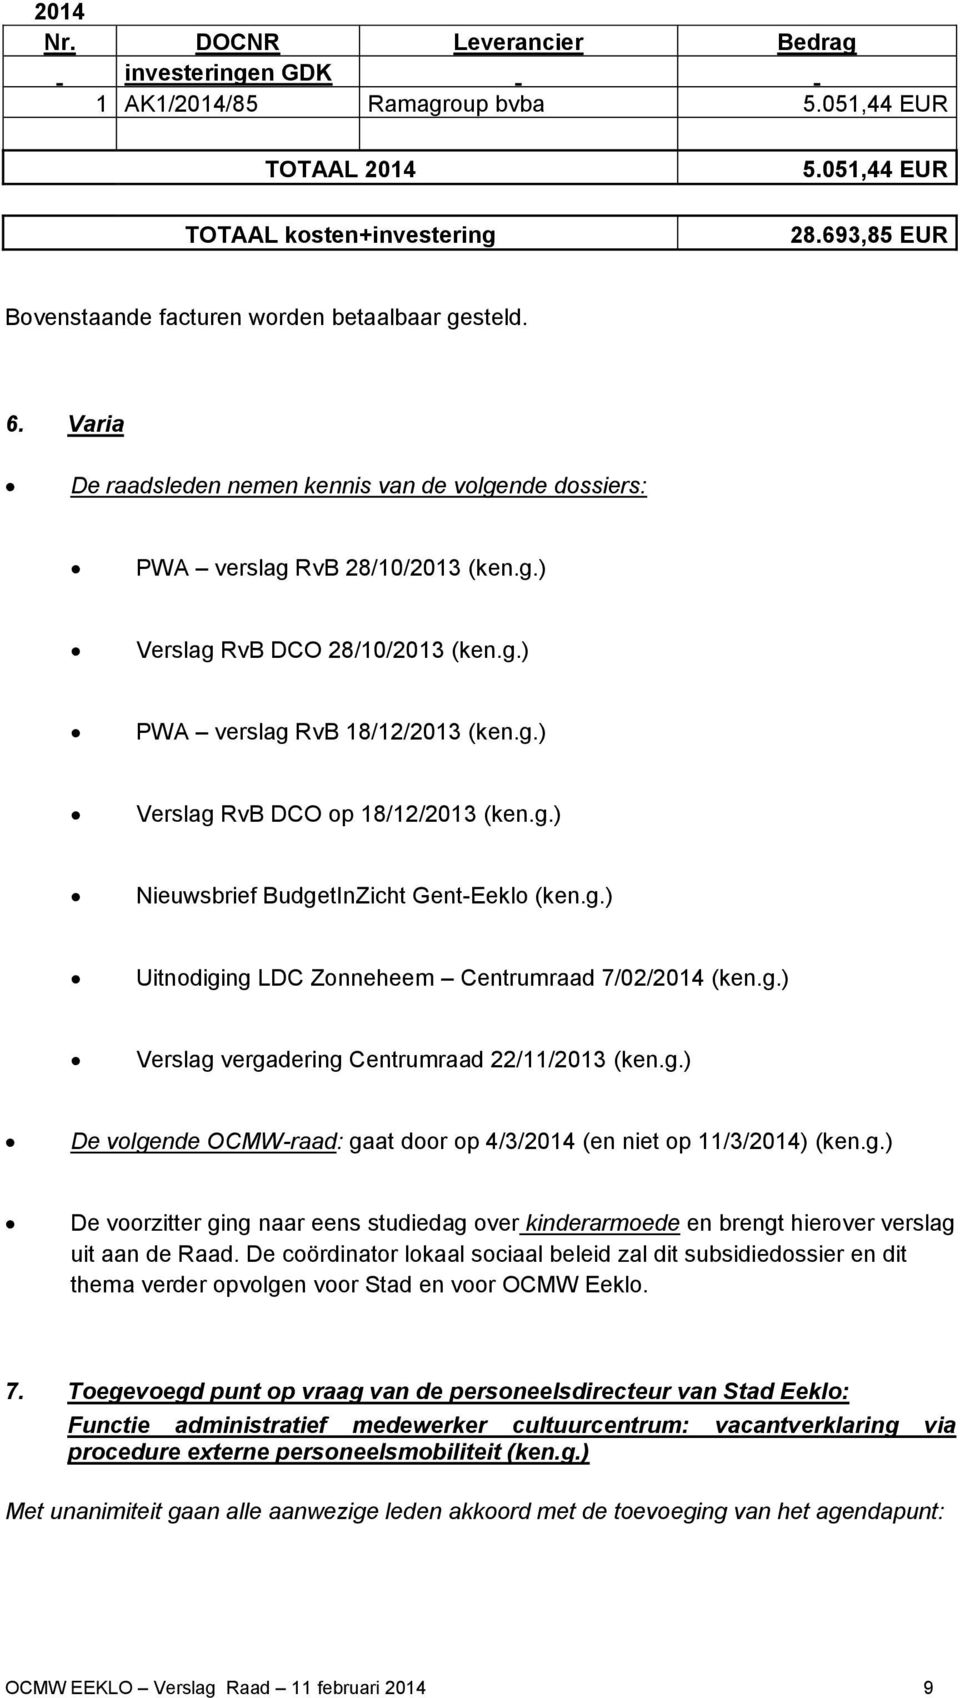 g.) Verslag RvB DCO op 18/12/2013 (ken.g.) Nieuwsbrief BudgetInZicht Gent-Eeklo (ken.g.) Uitnodiging LDC Zonneheem Centrumraad 7/02/2014 (ken.g.) Verslag vergadering Centrumraad 22/11/2013 (ken.g.) De volgende OCMW-raad: gaat door op 4/3/2014 (en niet op 11/3/2014) (ken.